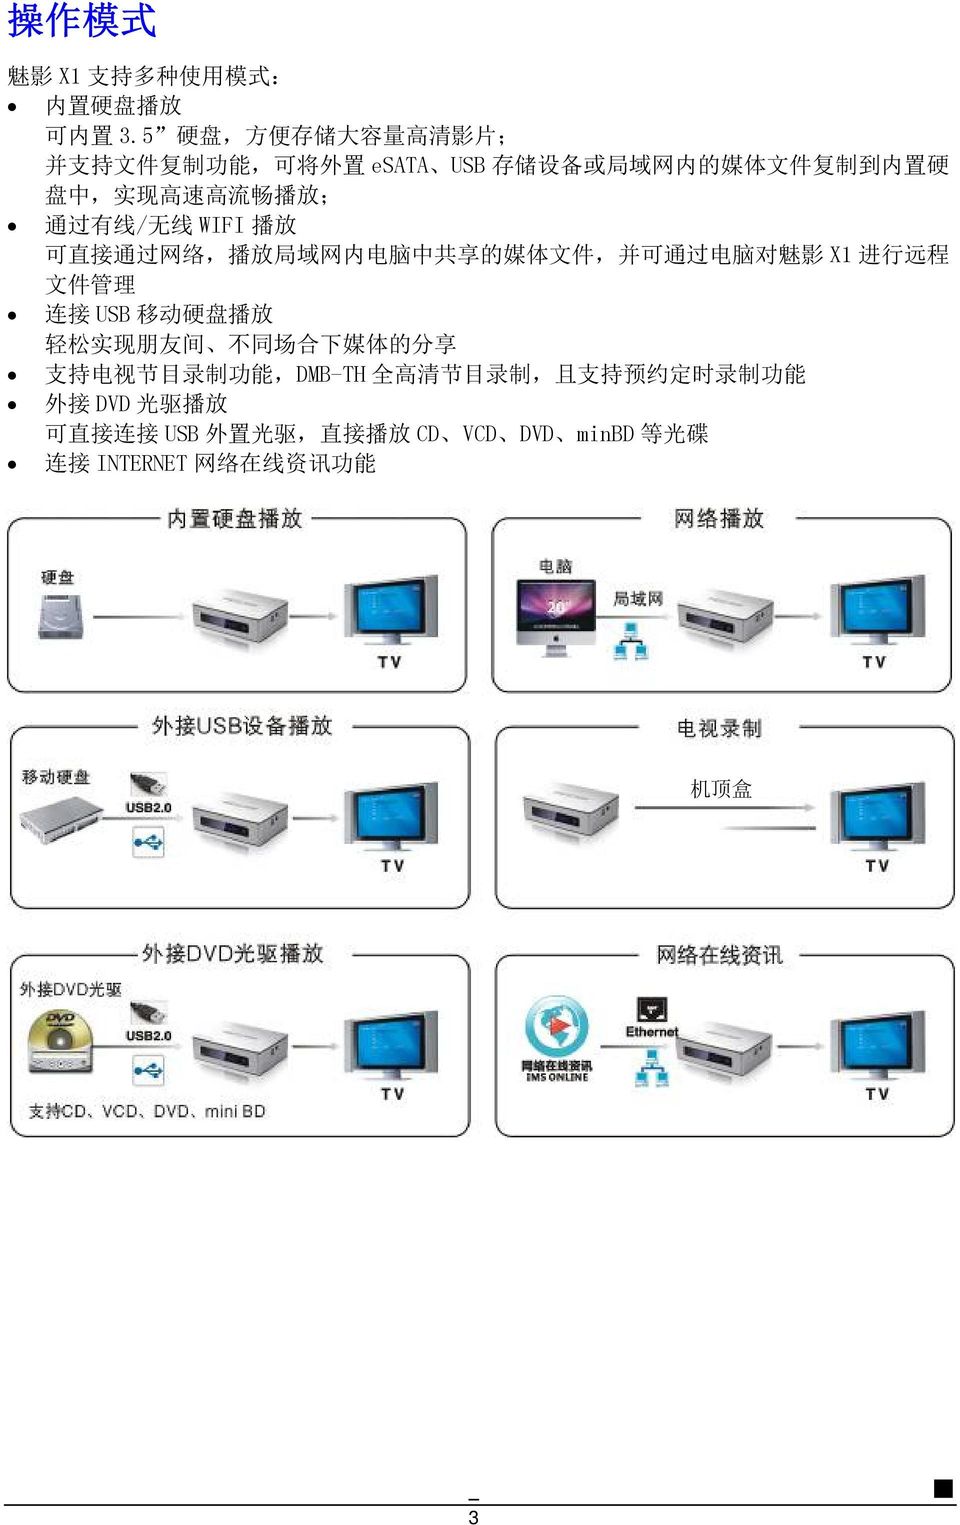 放 ; 通 过 有 线 / 无 线 WIFI 播 放 可 直 接 通 过 网 络, 播 放 局 域 网 内 电 脑 中 共 享 的 媒 体 文 件, 并 可 通 过 电 脑 对 魅 影 X1 进 行 远 程 文 件 管 理 连 接 USB 移 动 硬 盘 播